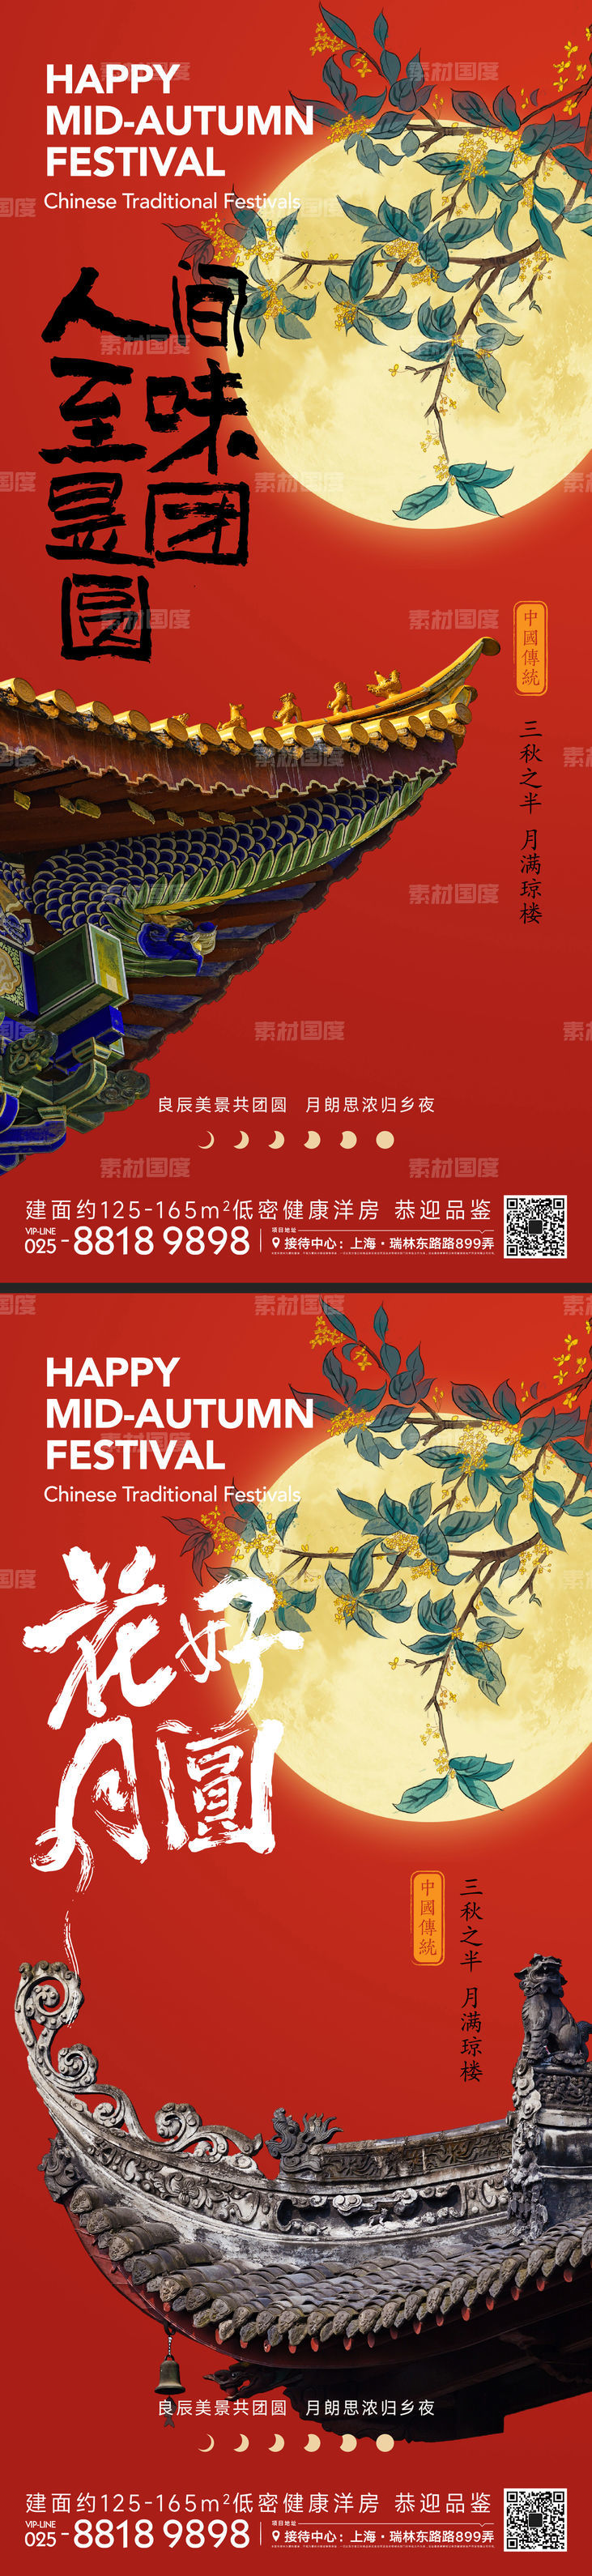  中国风中秋节海报